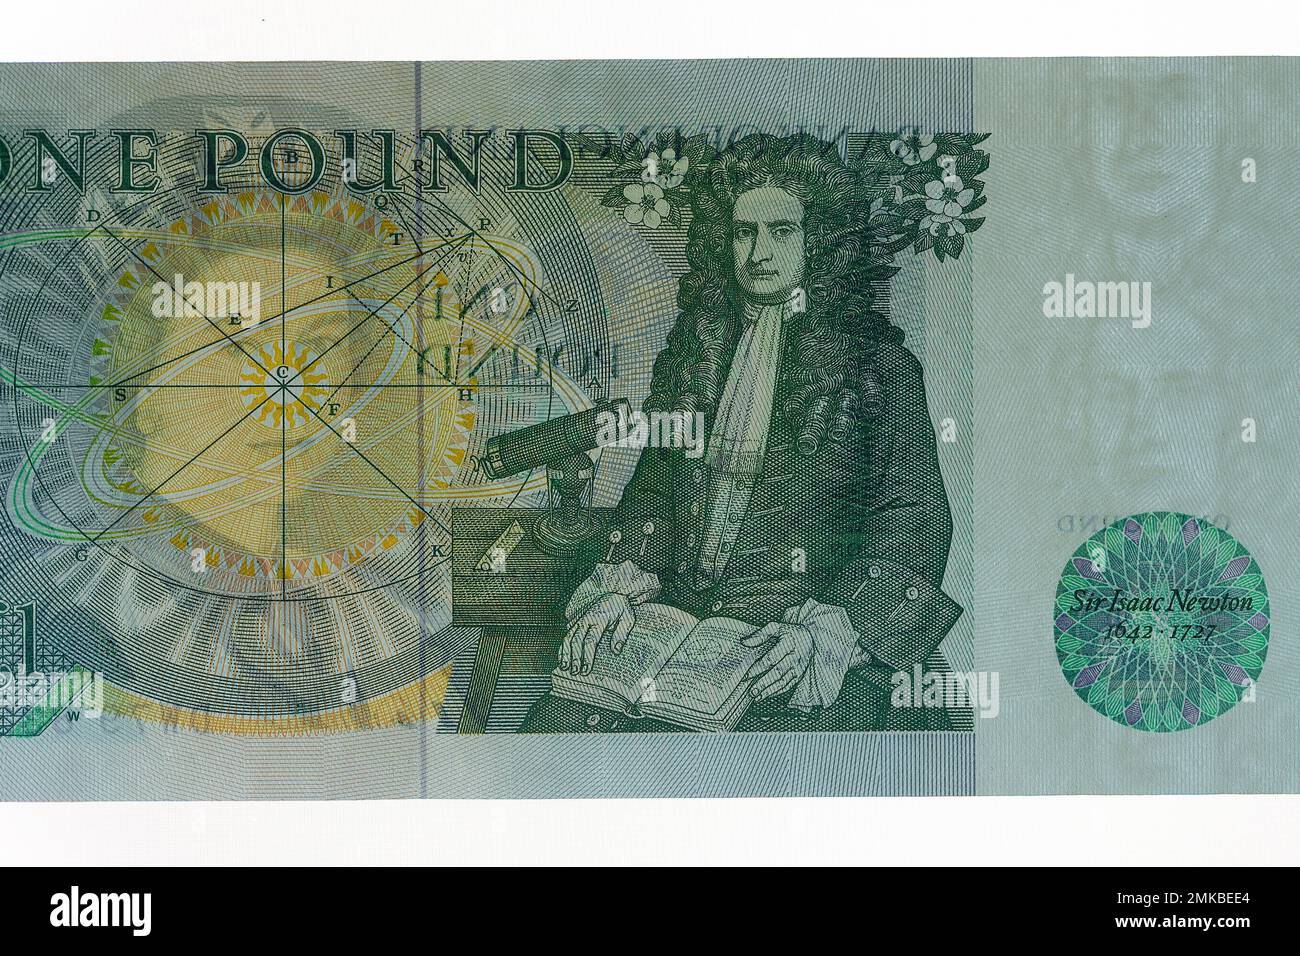 Ein britischer £1-Euro-Schein der Bank of England, der überholt wurde und 1988 abgehoben wurde. Sie wurde dann durch eine £1-Dollar-Münze ersetzt Stockfoto